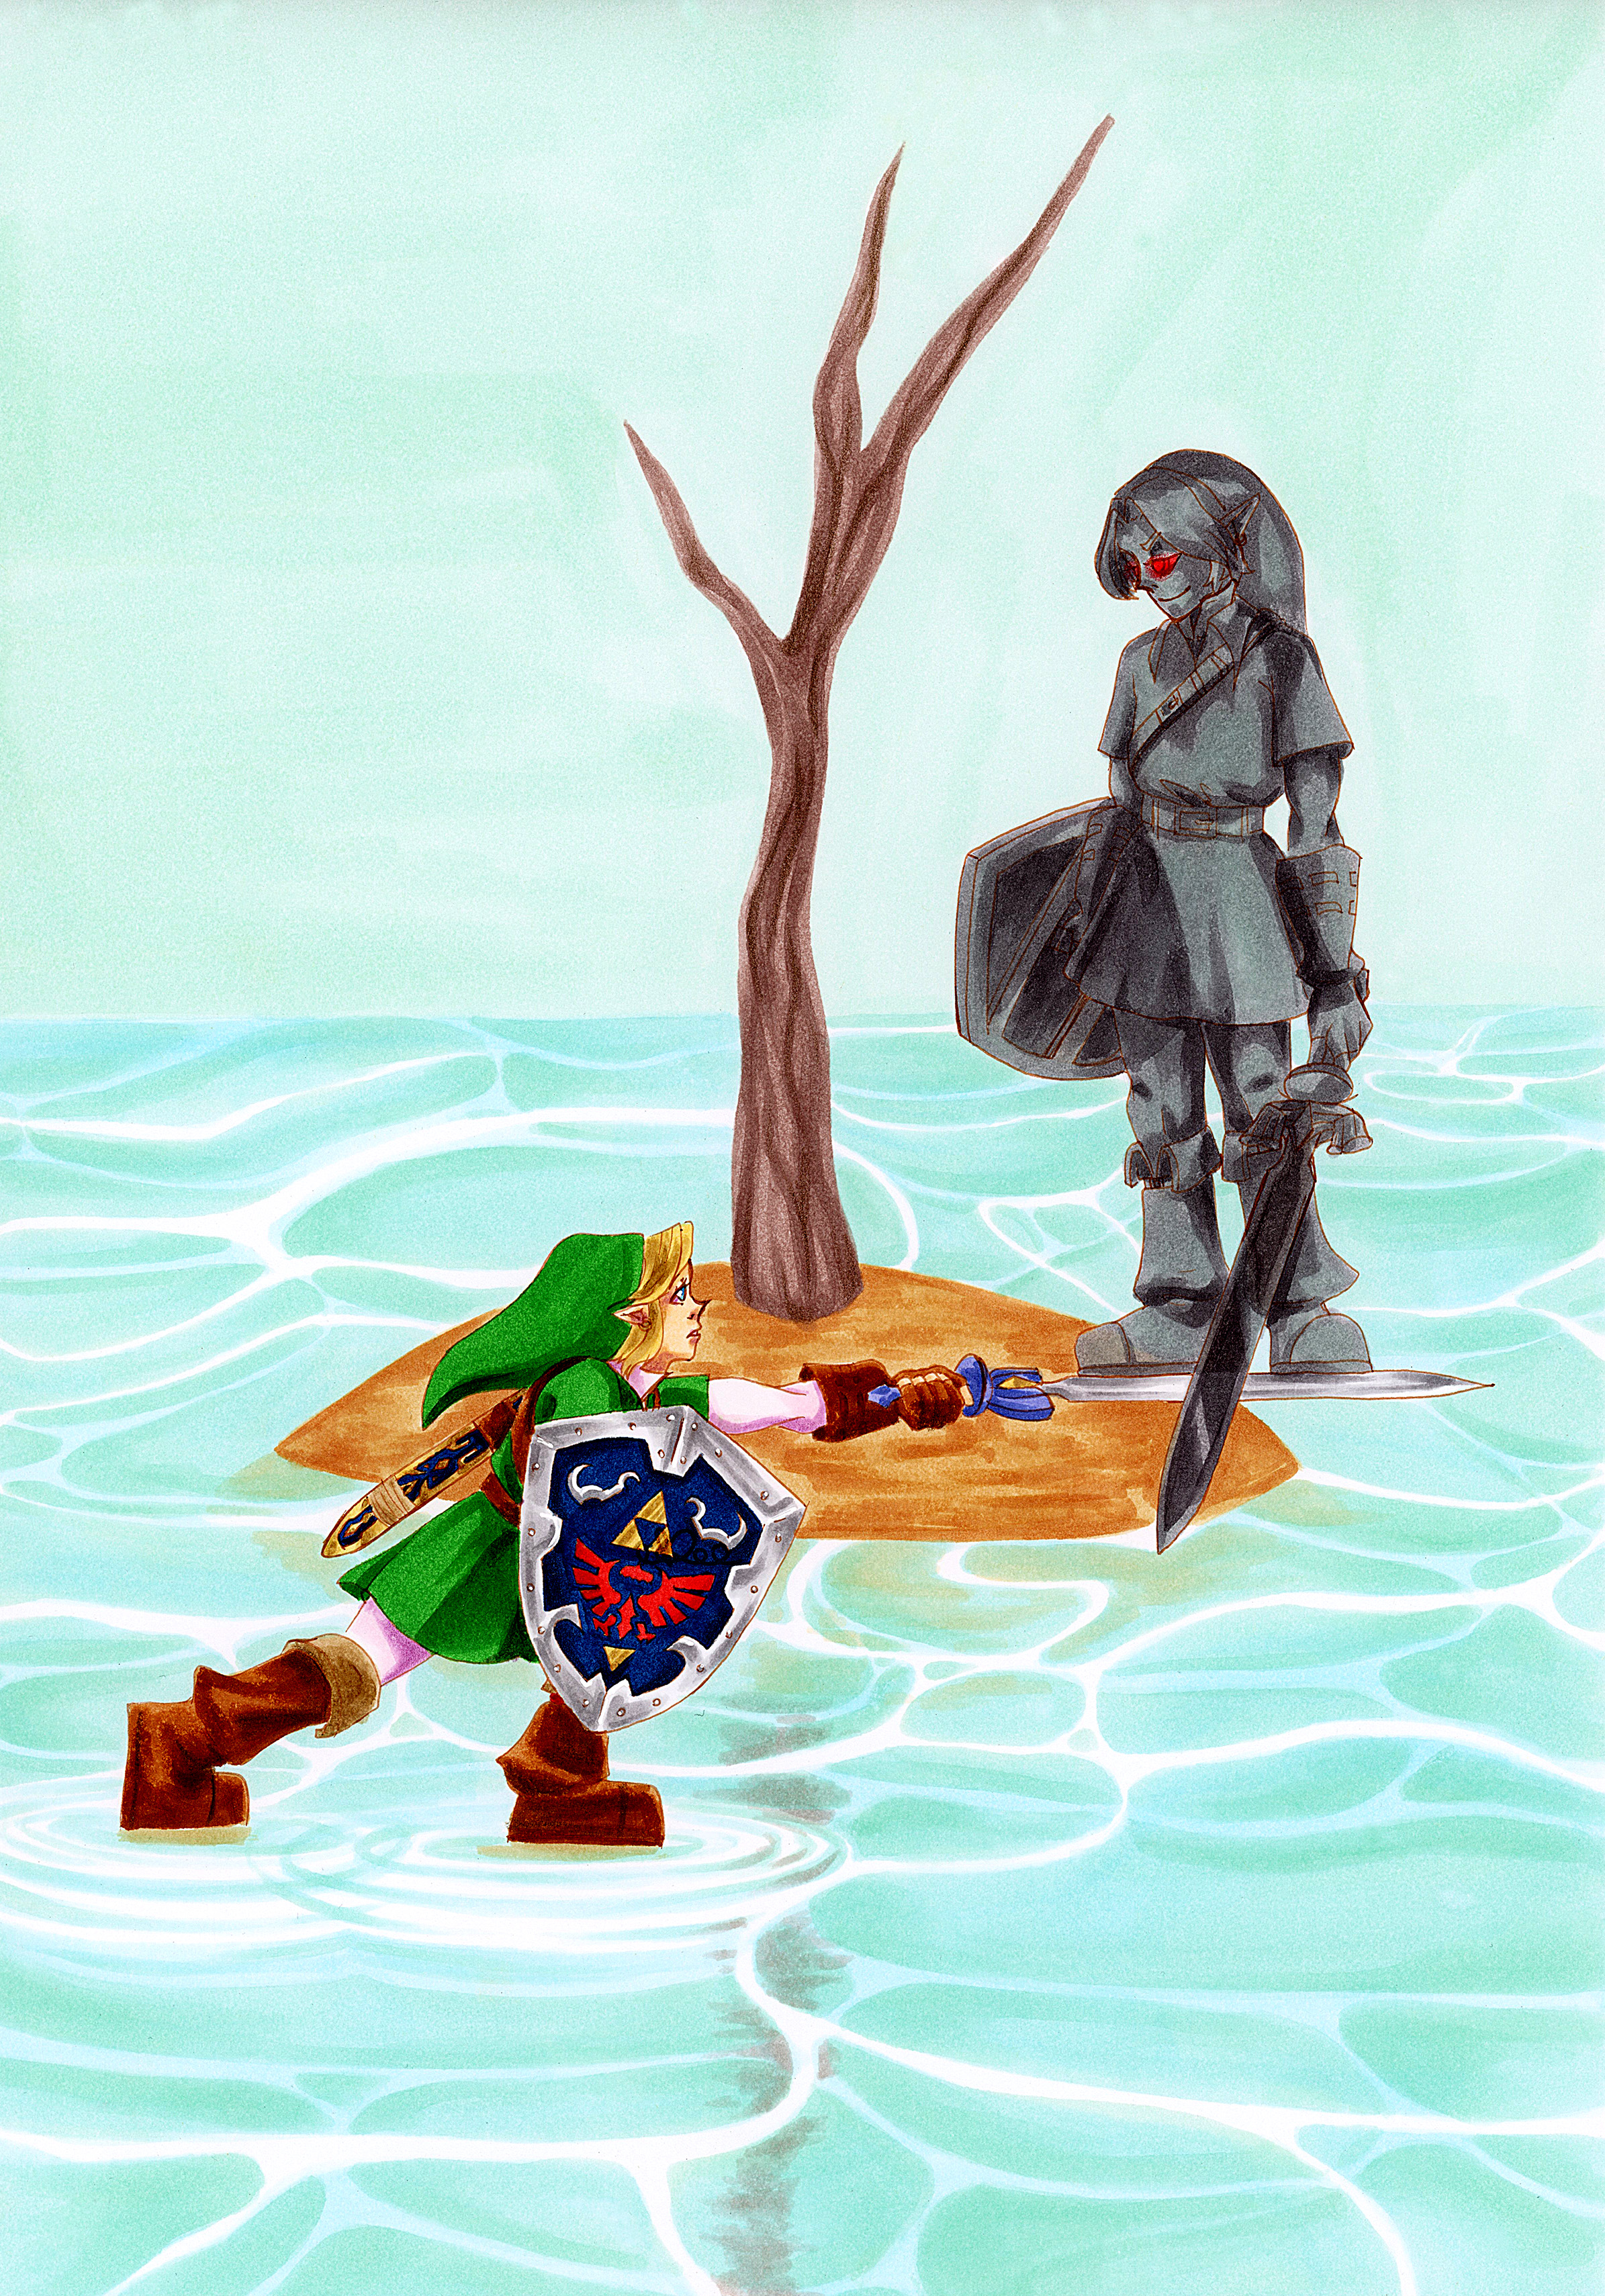 Legend of Zelda Fanart - Zelda 30th Anniversary Zelda can't